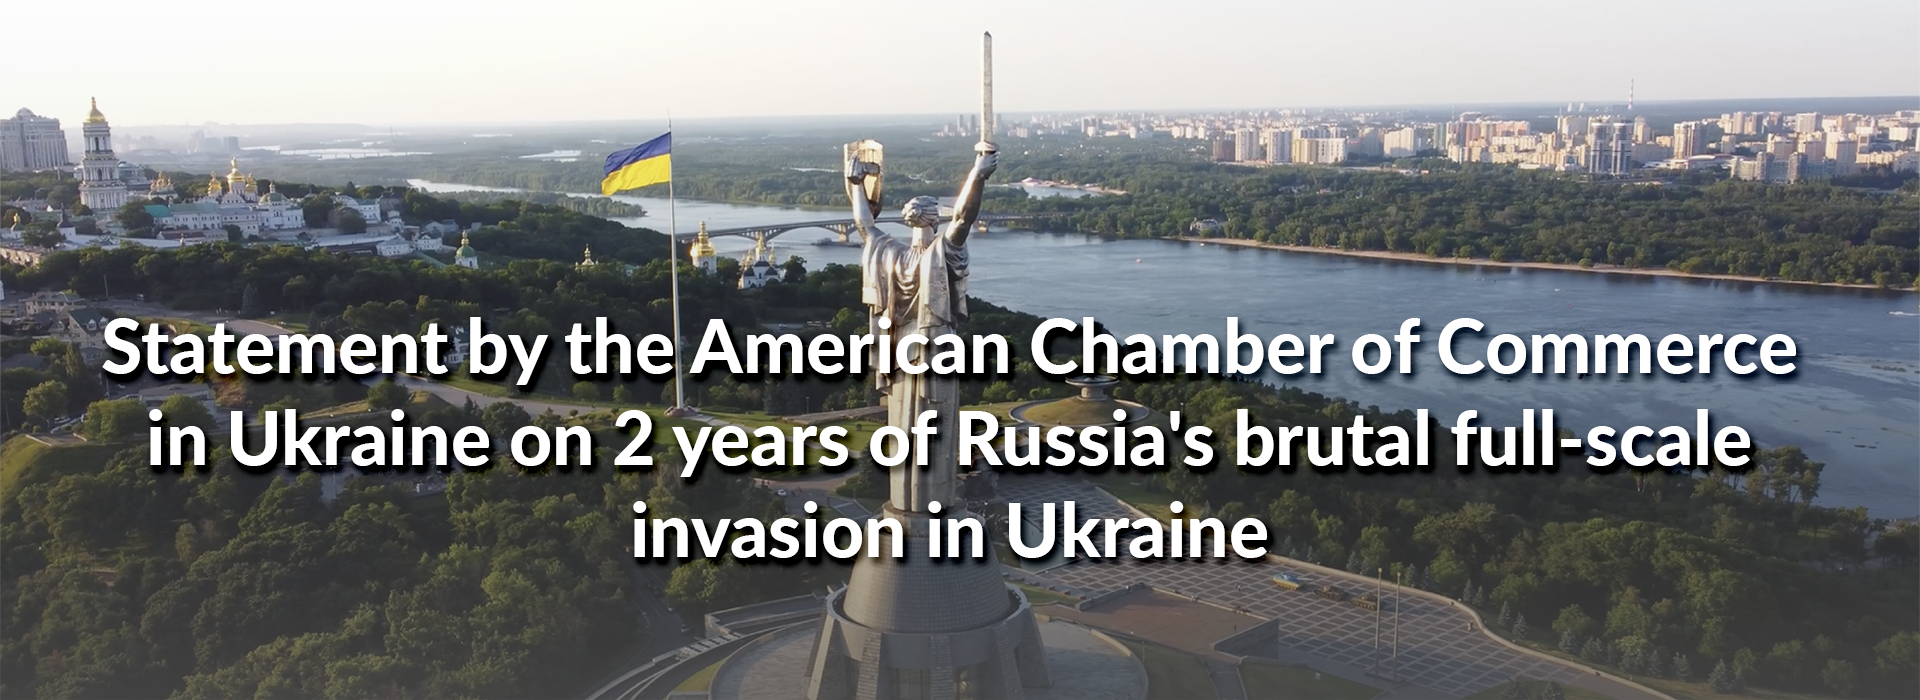 Заява Американської торговельної палати в Україні до другої річниці повномасштабного вторгнення росії в Україну